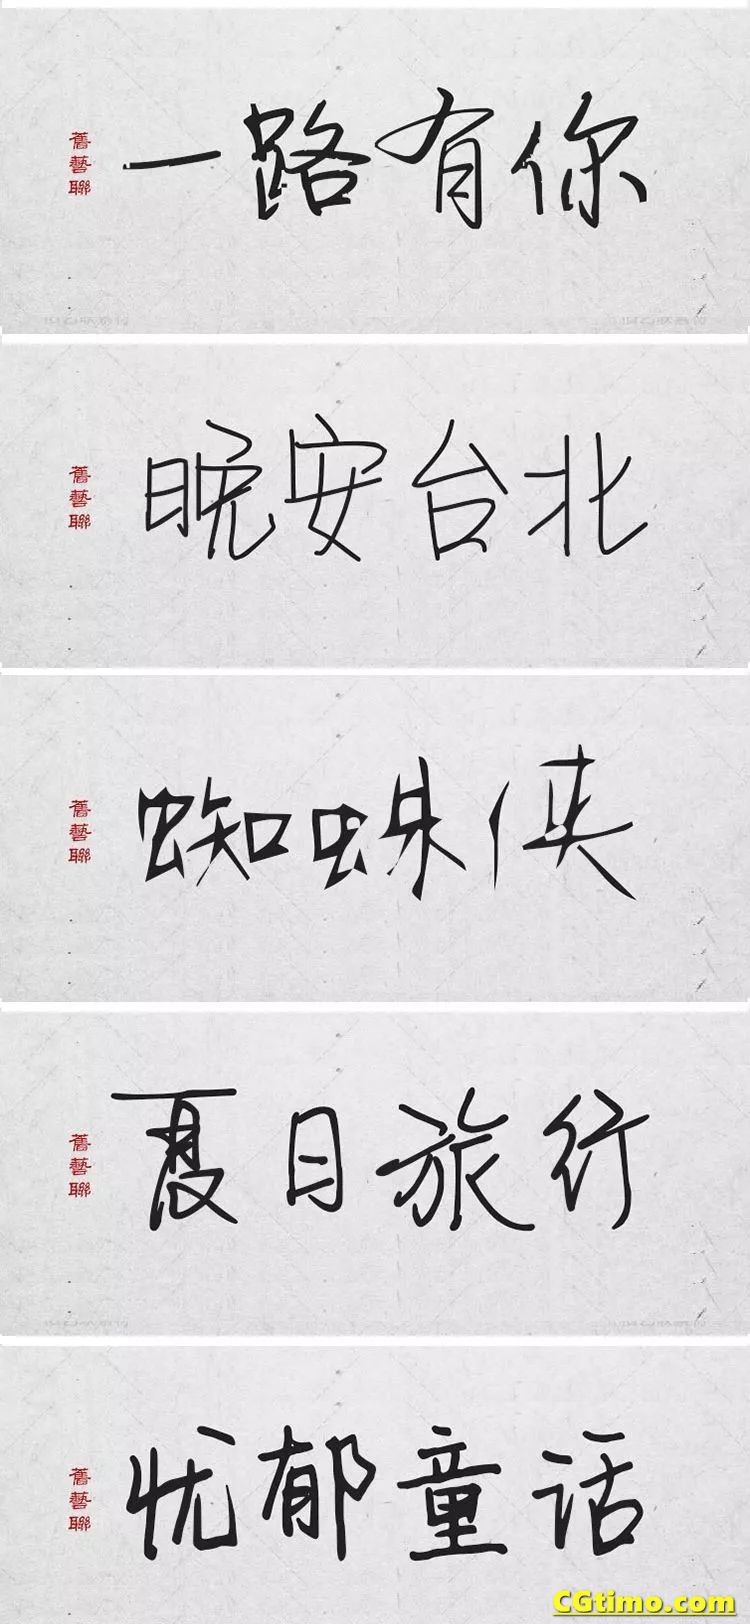 字体-300款中国风高端毛笔字体+笔触合集 字体下载 第14张